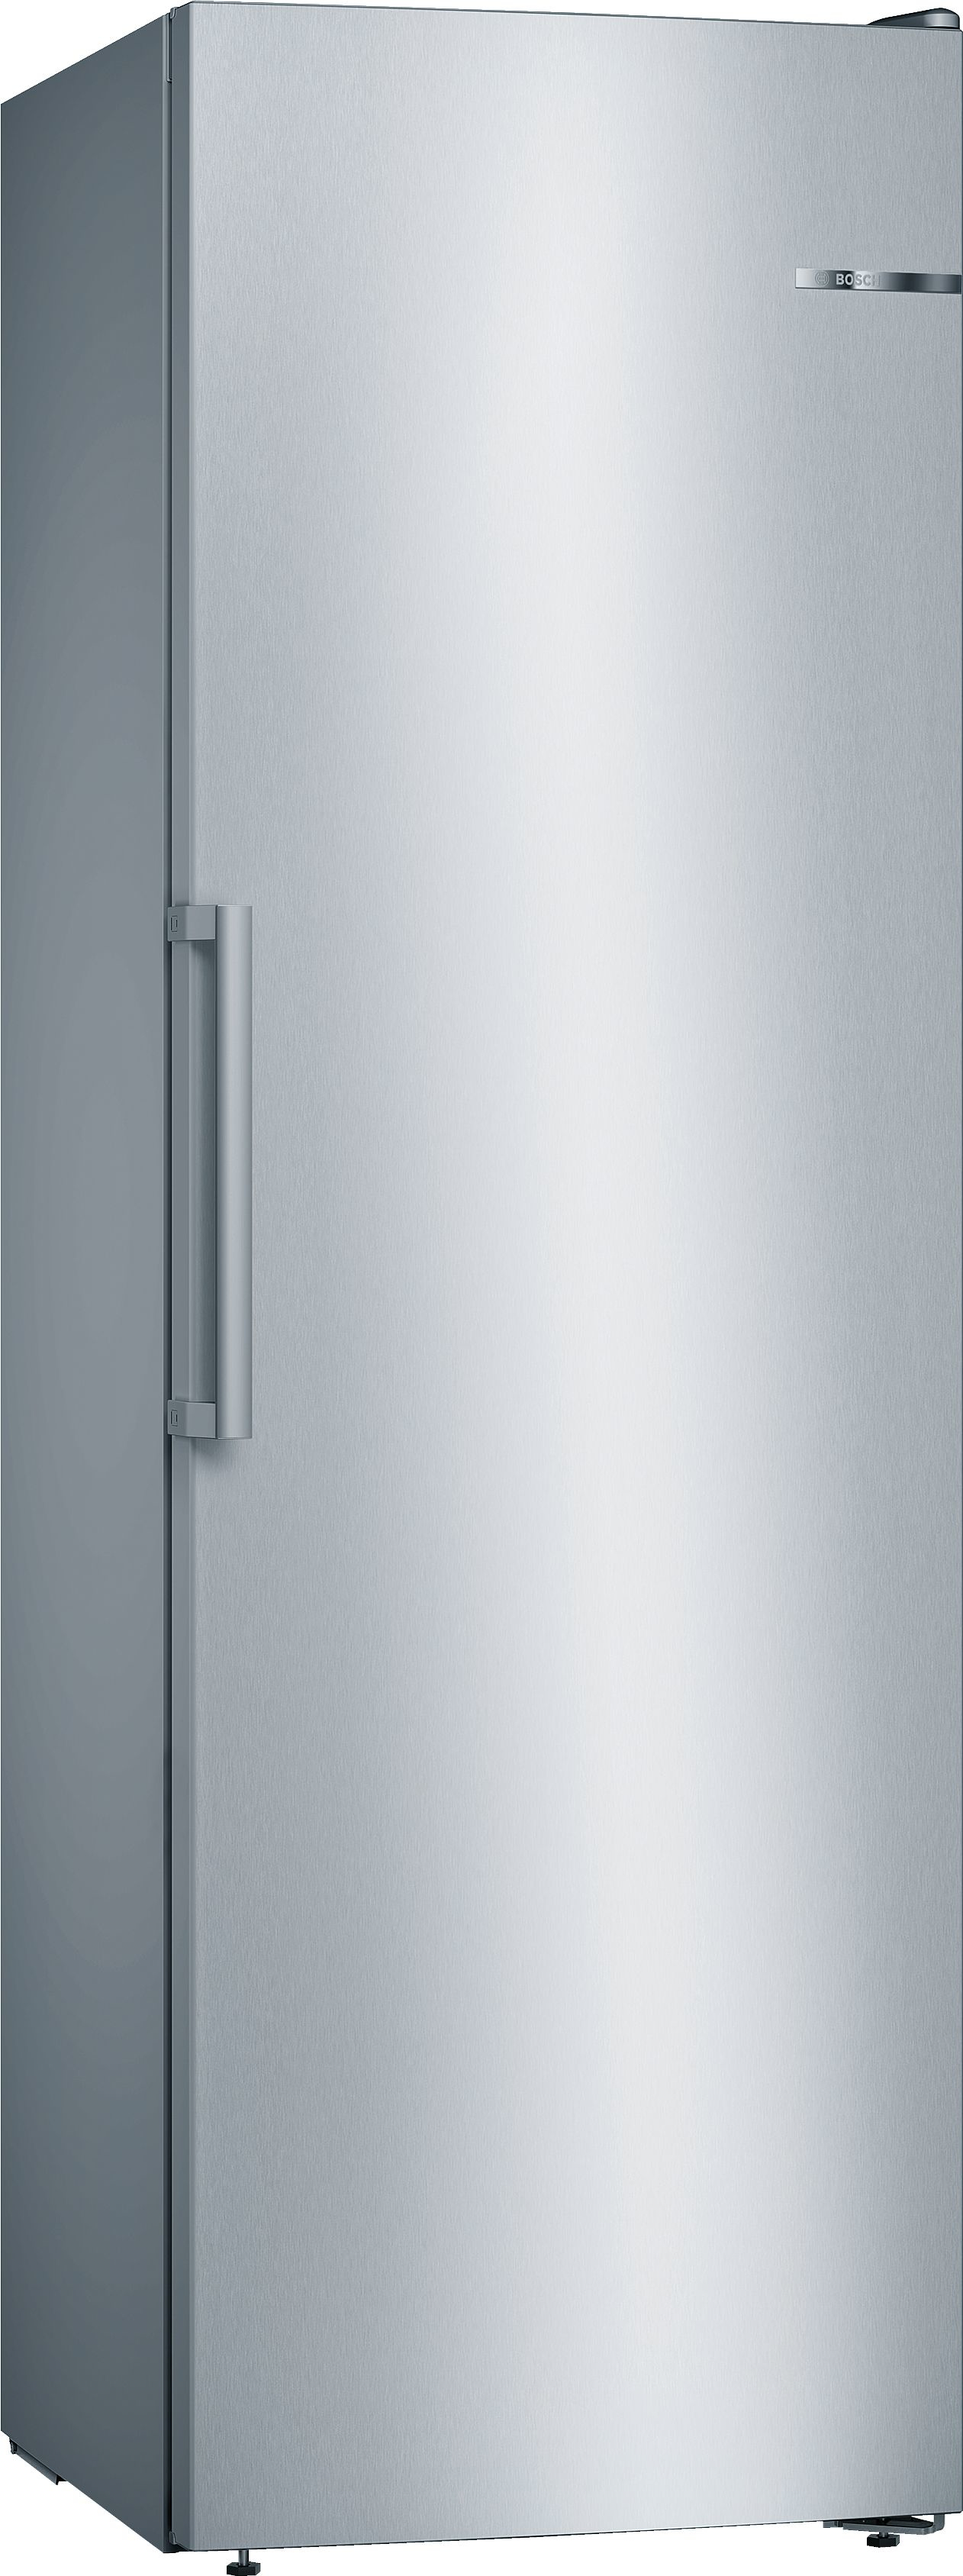 Image of Bosch Serie 4 Congelatore monoporta da libera installazione, 186 x 60 cm, Inox look